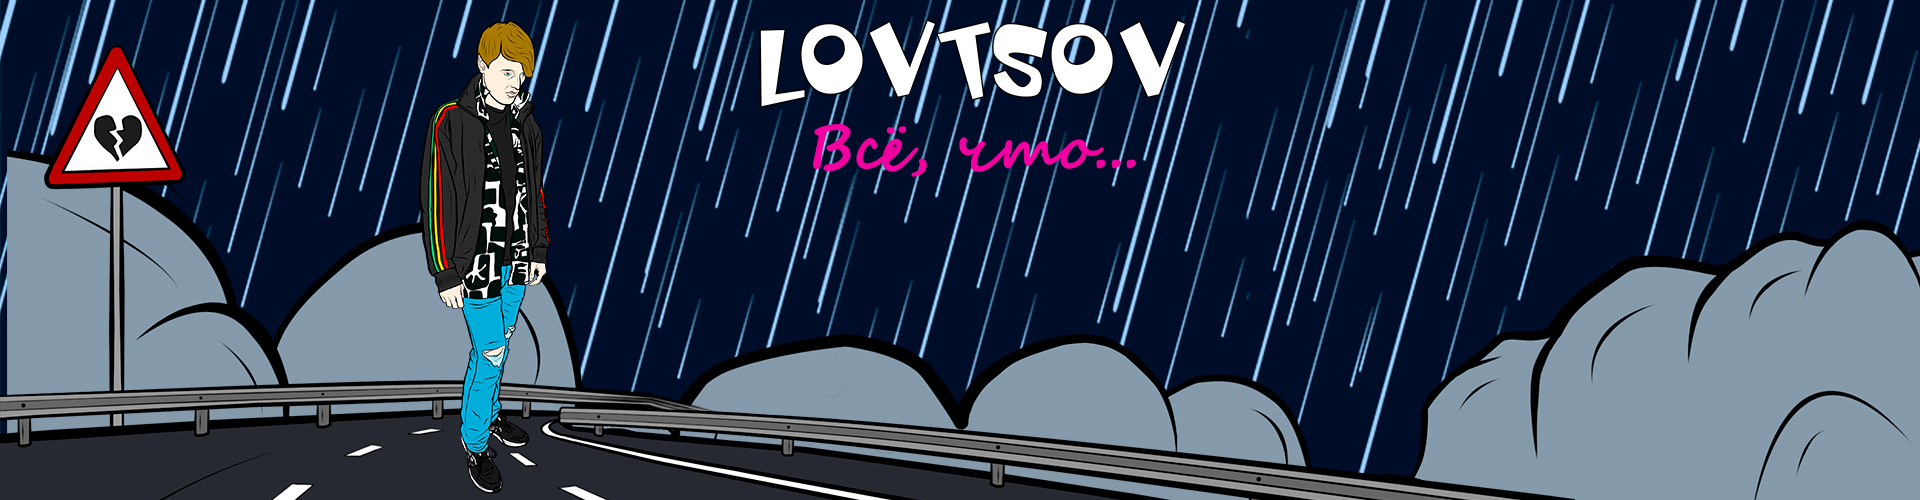 LOVTSOV - Все, что... slider